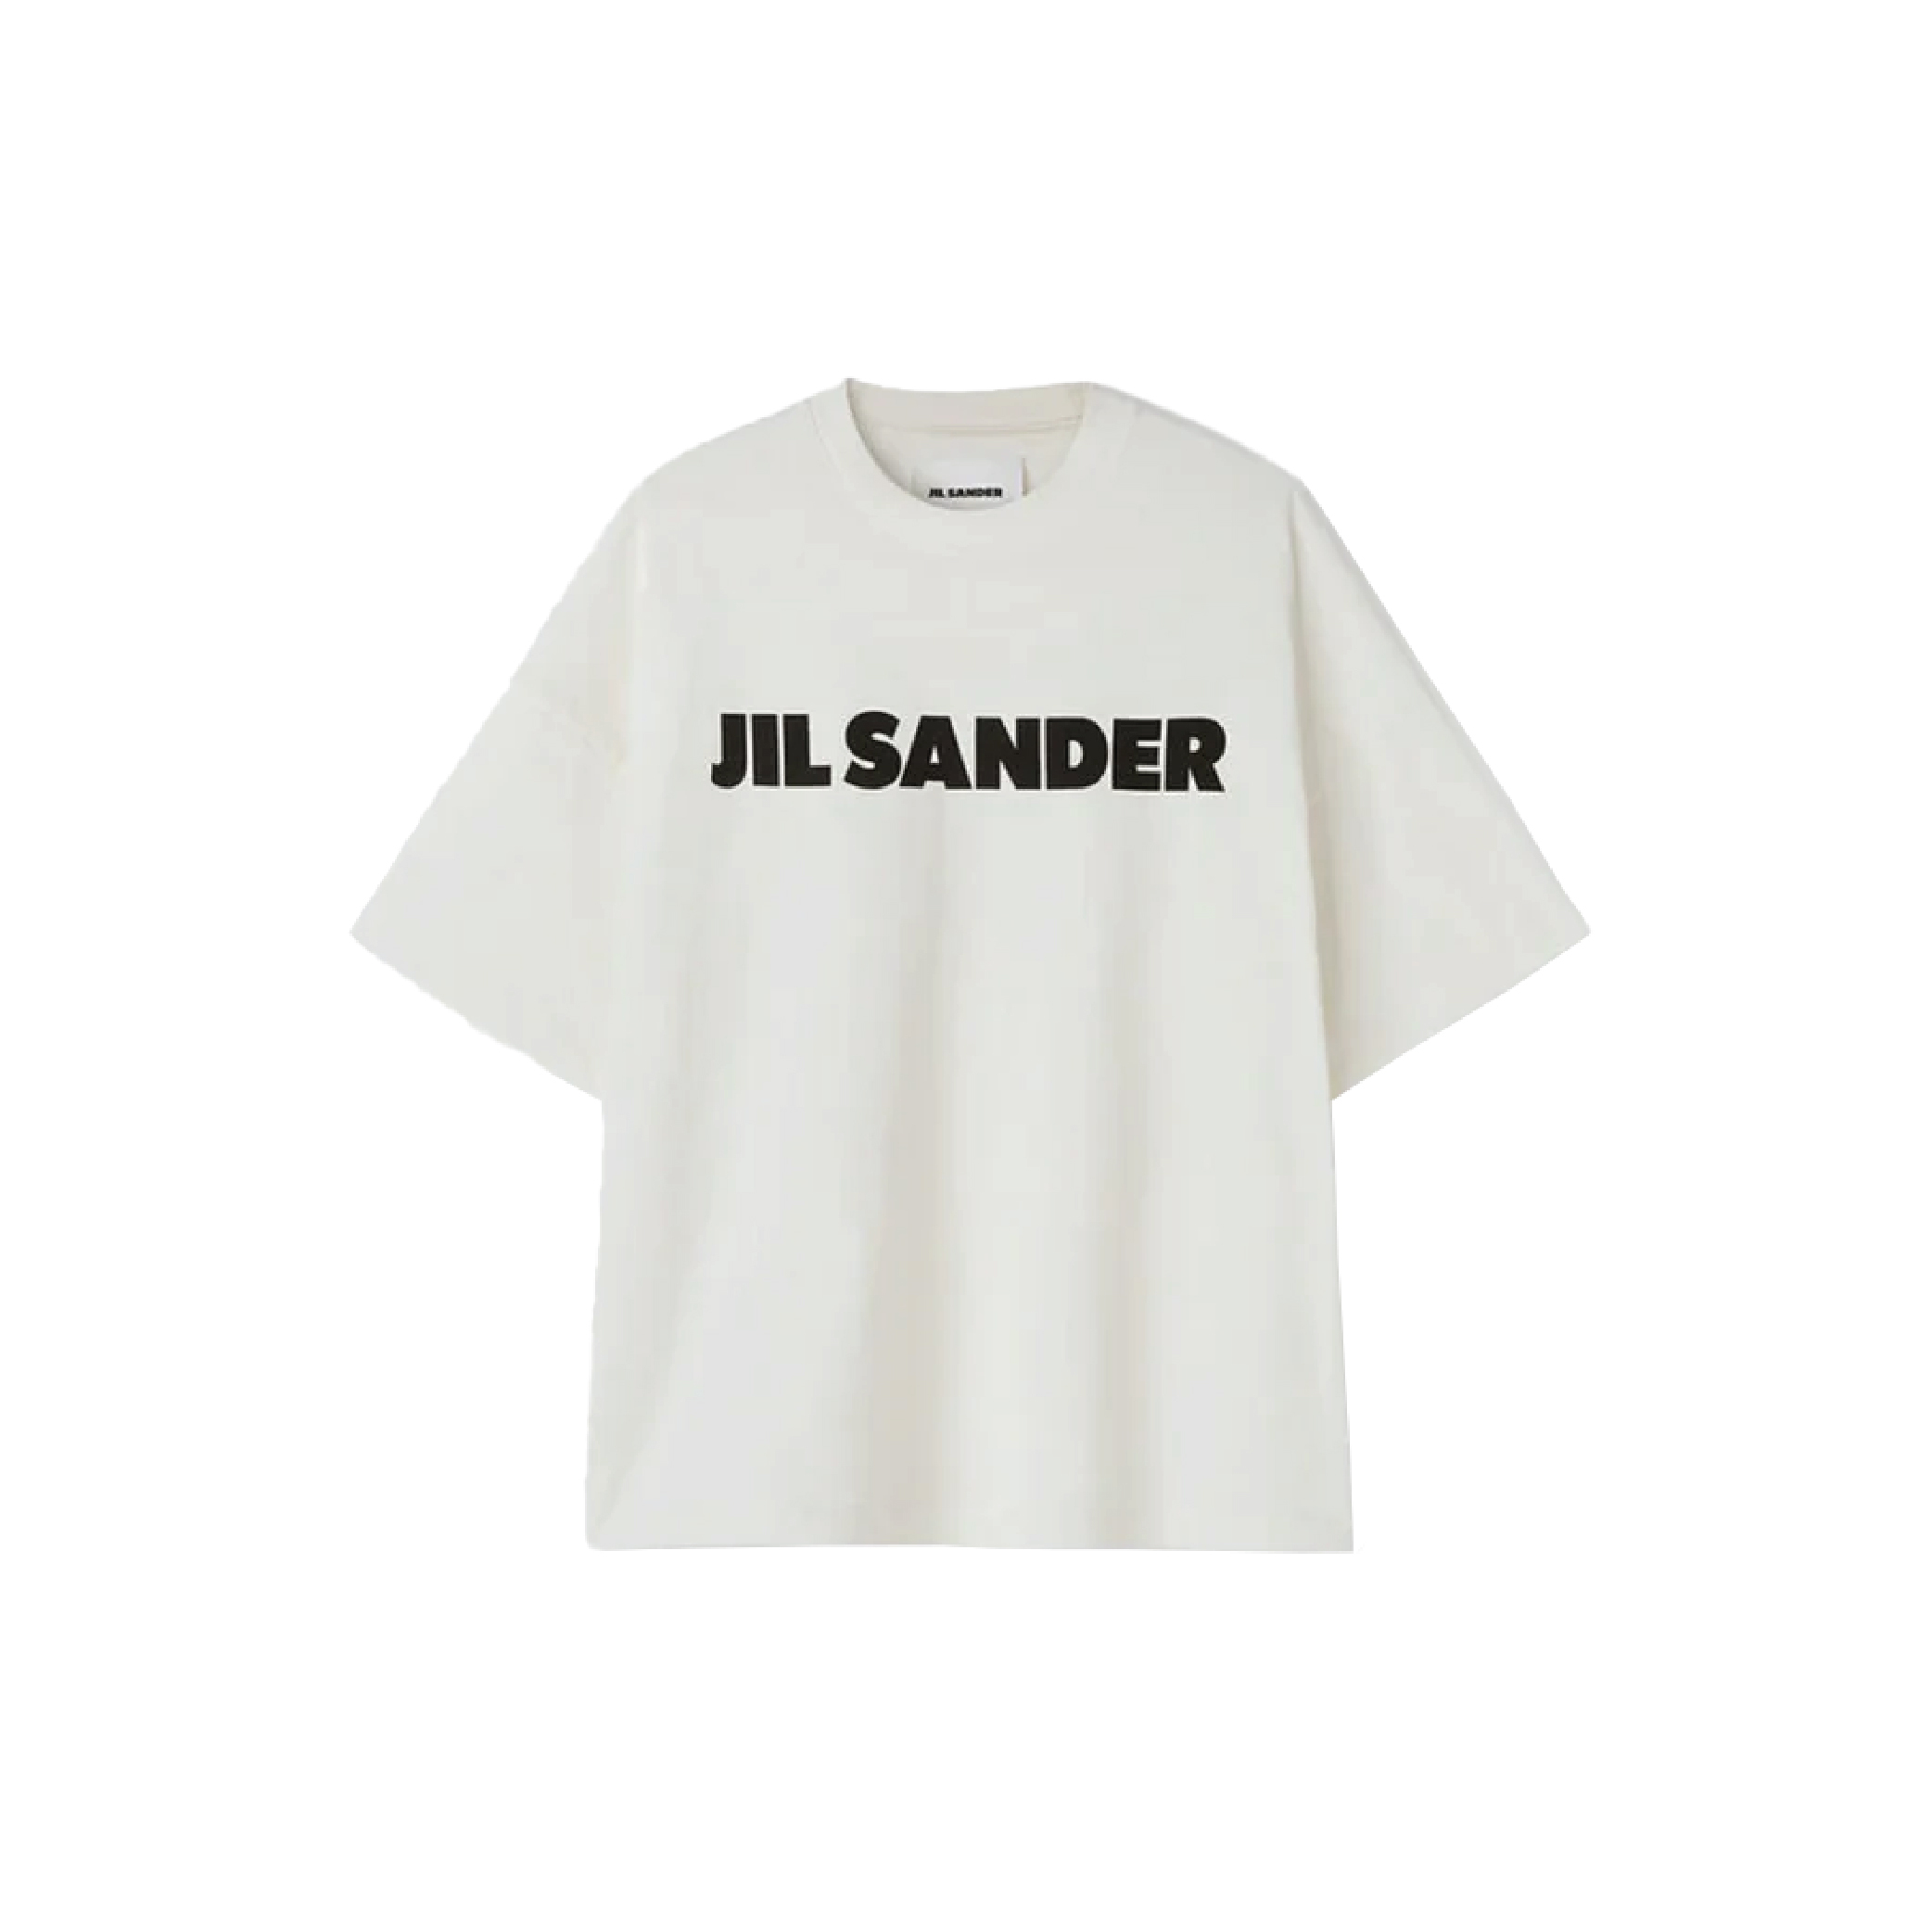 JIL SANDER Logo Printed T-Shirt-01